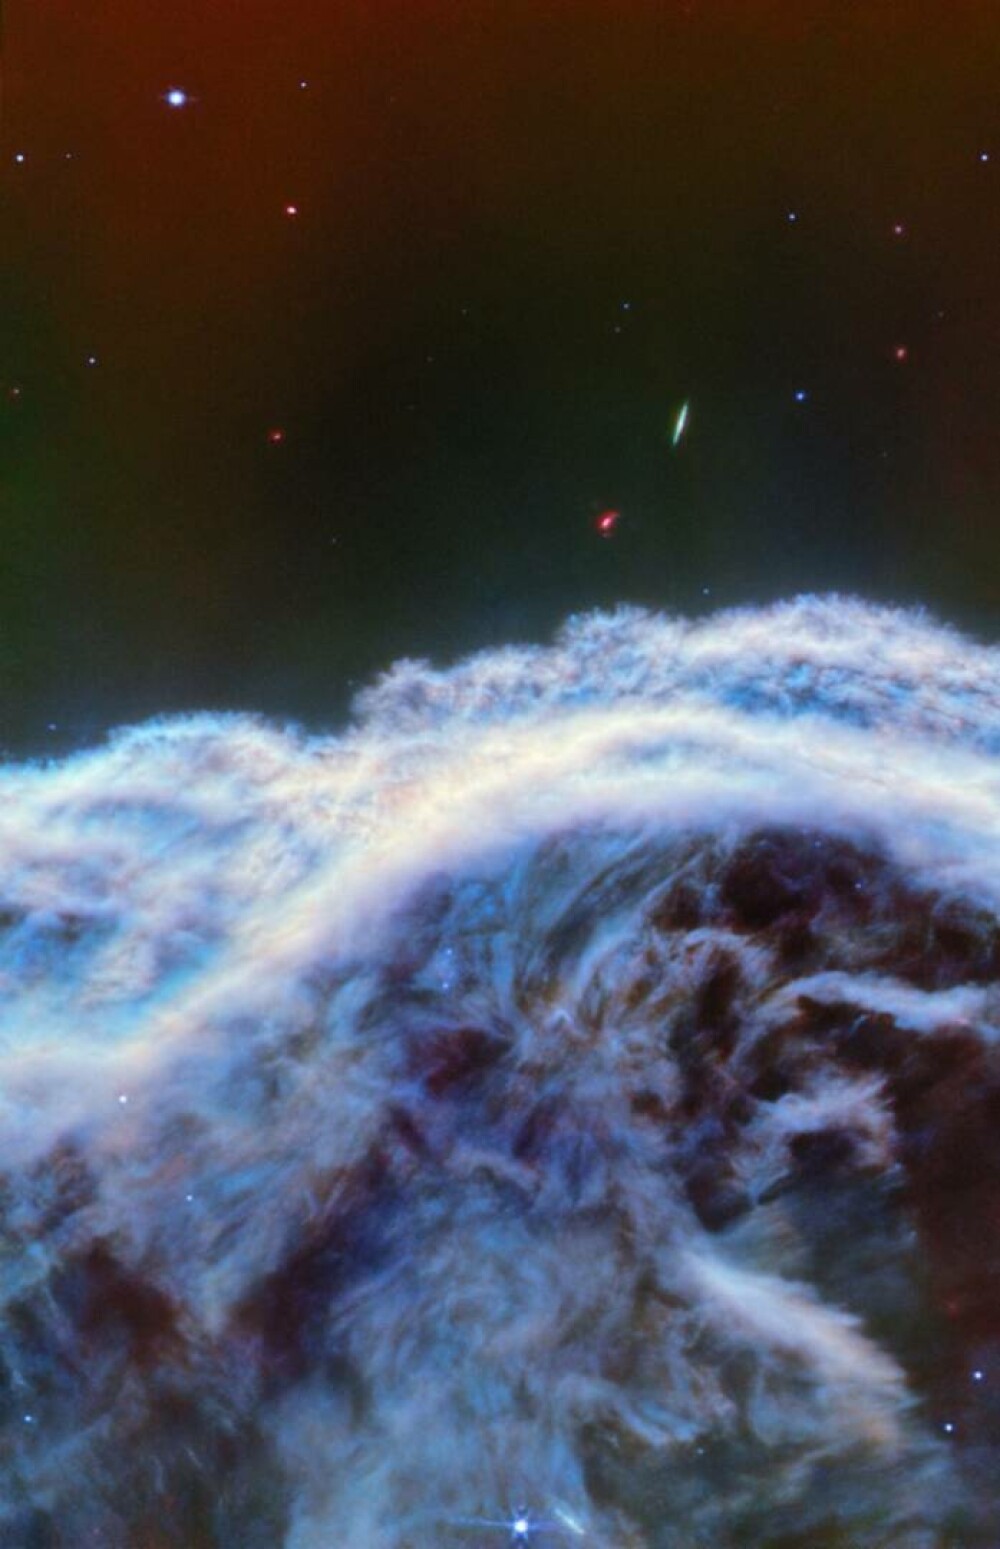 Fotografii fără precedent cu nebuloasa ”Cap de Cal”, realizate cu cel mai puternic telescop spațial din lume, James Webb - Imaginea 2